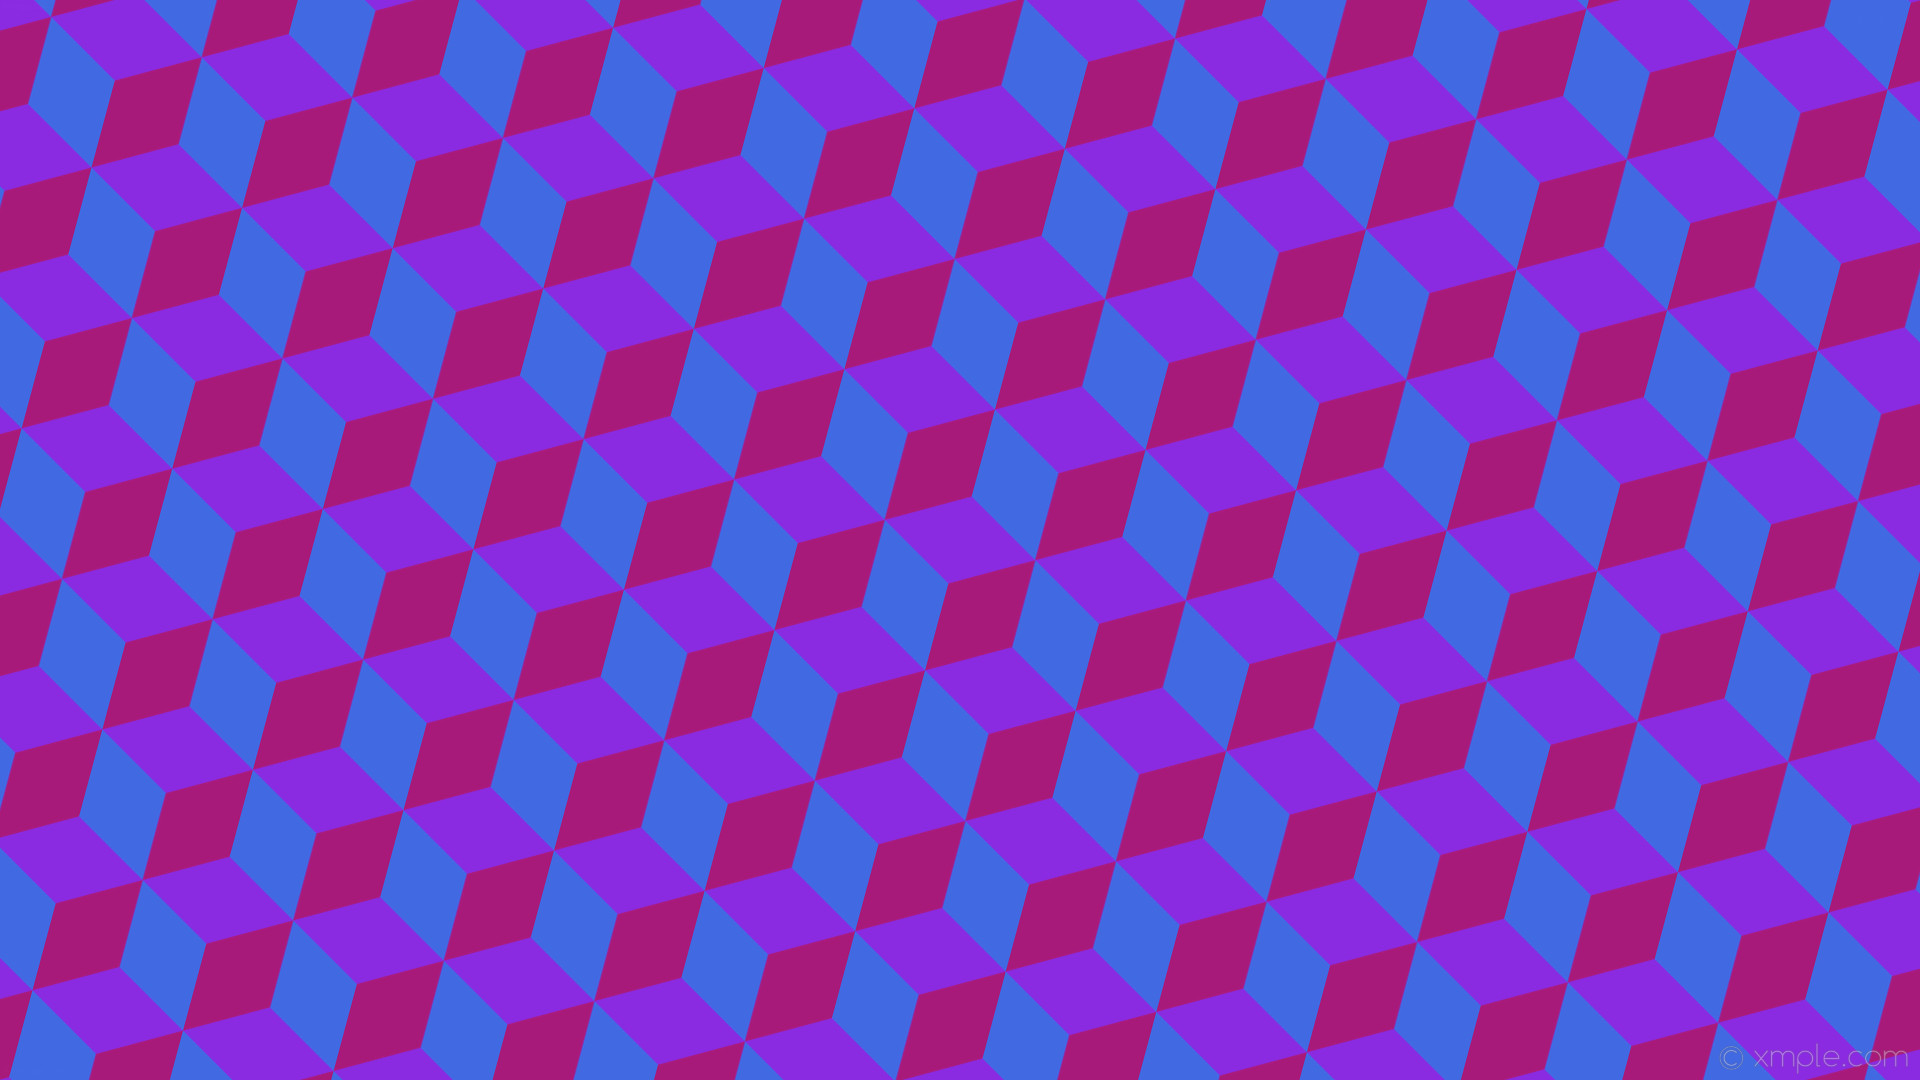 1920x1080 wallpaper pink 3d cubes purple blue blue violet royal blue #8a2be2 #4169e1  #a81a79